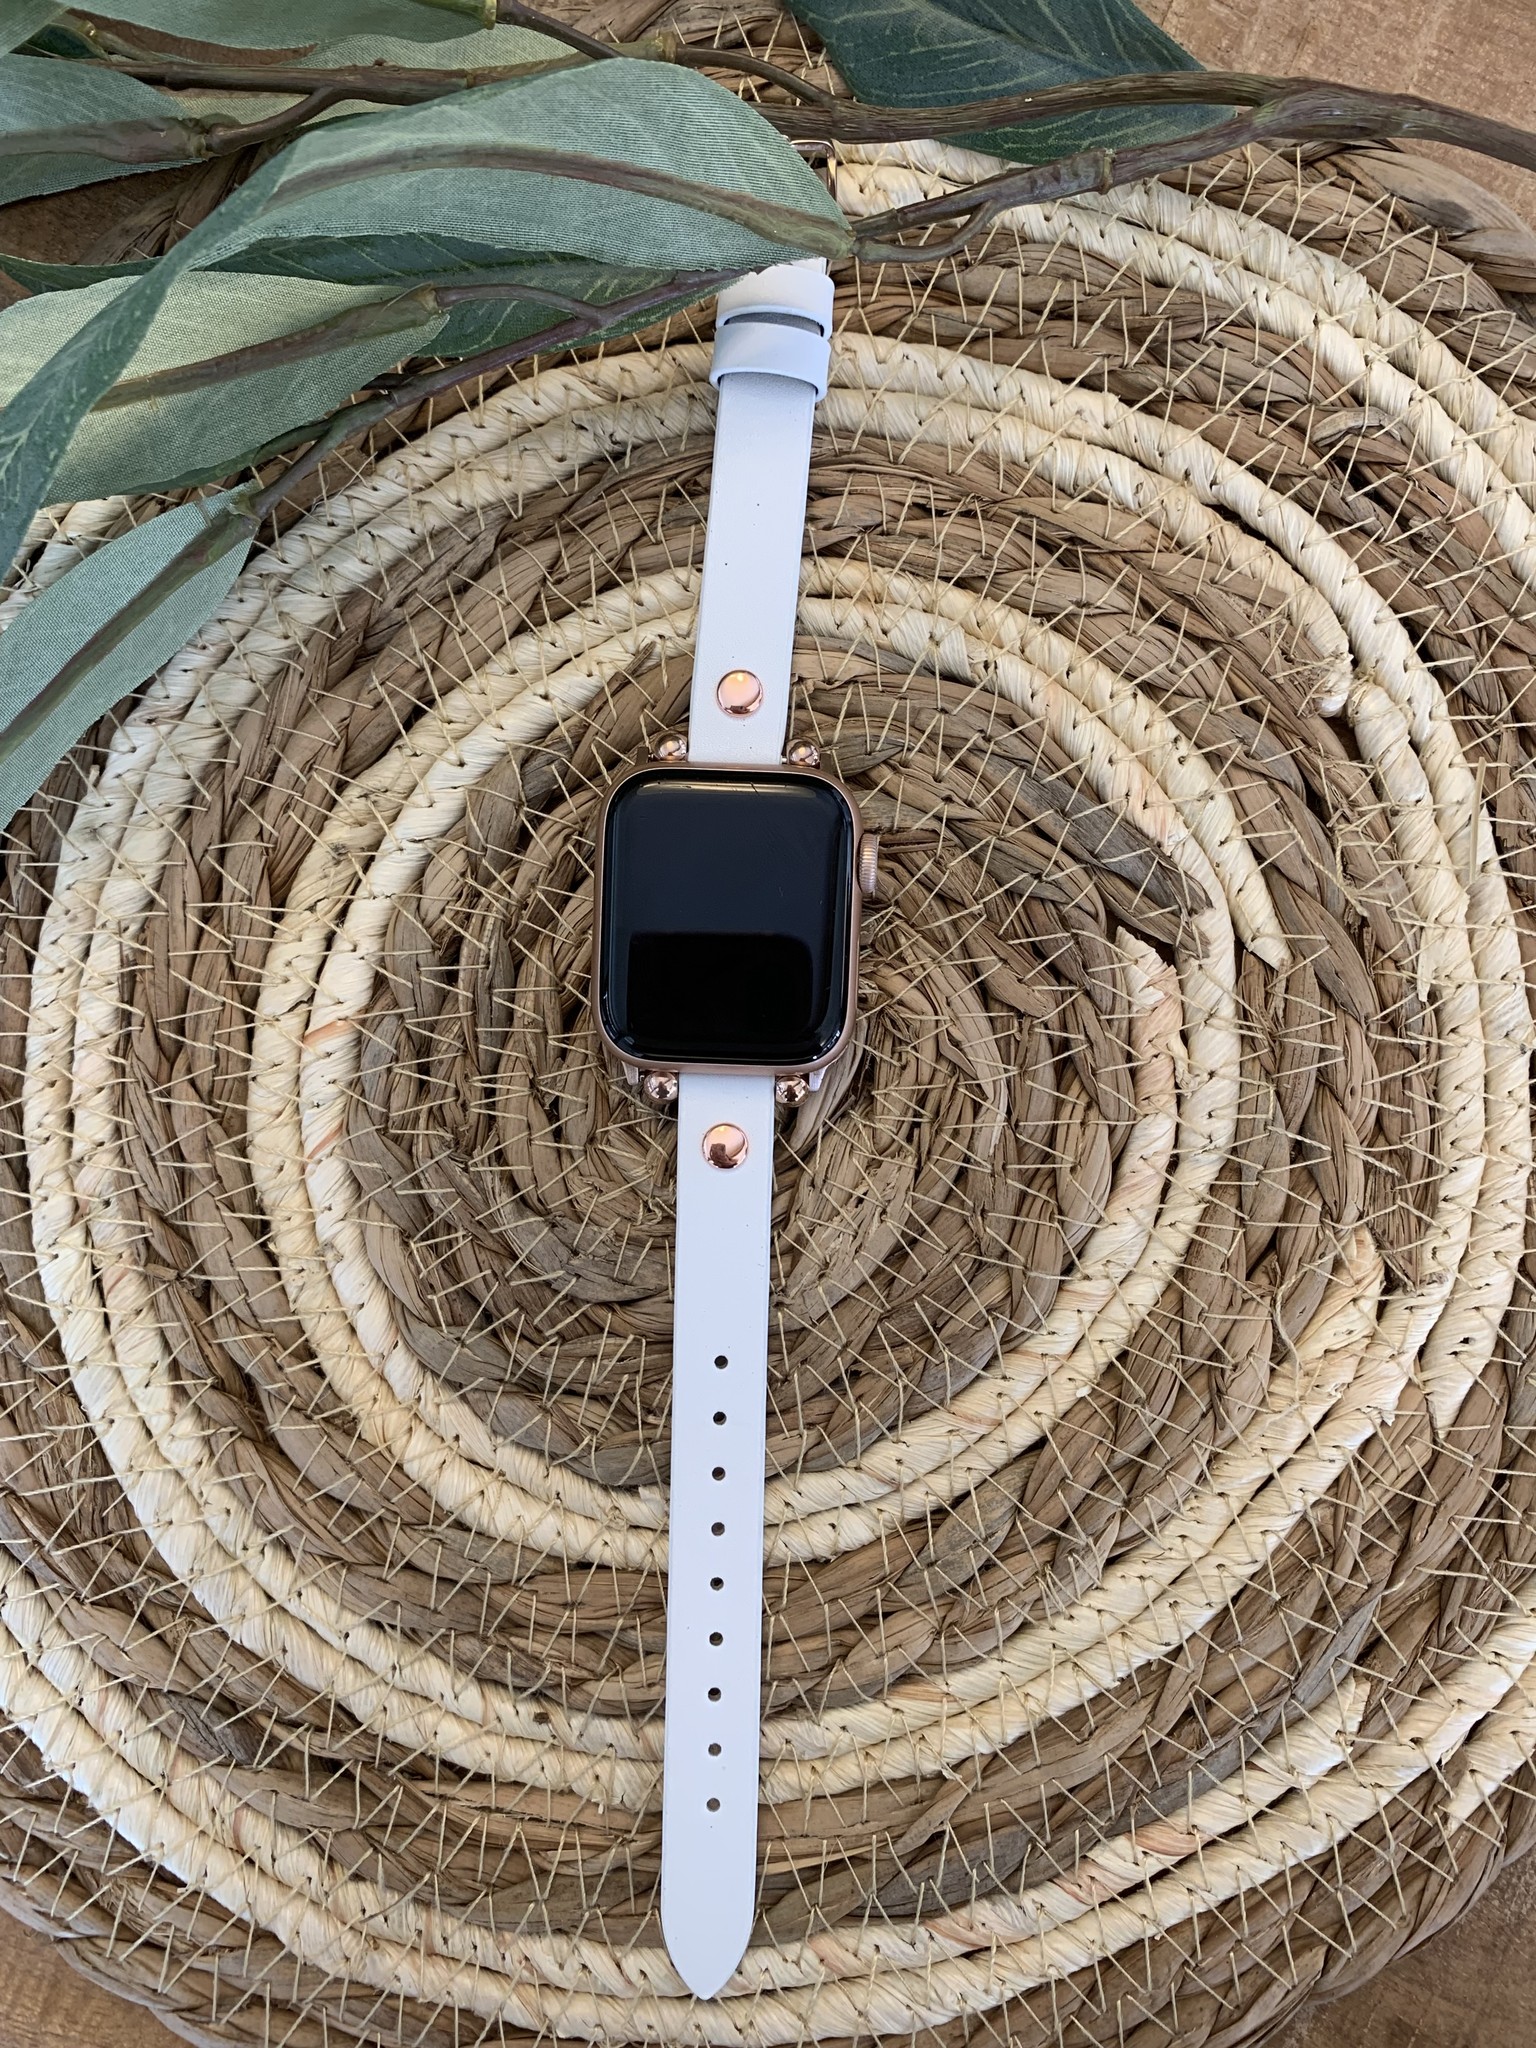  Apple Watch vékony bőrszíj - fehér